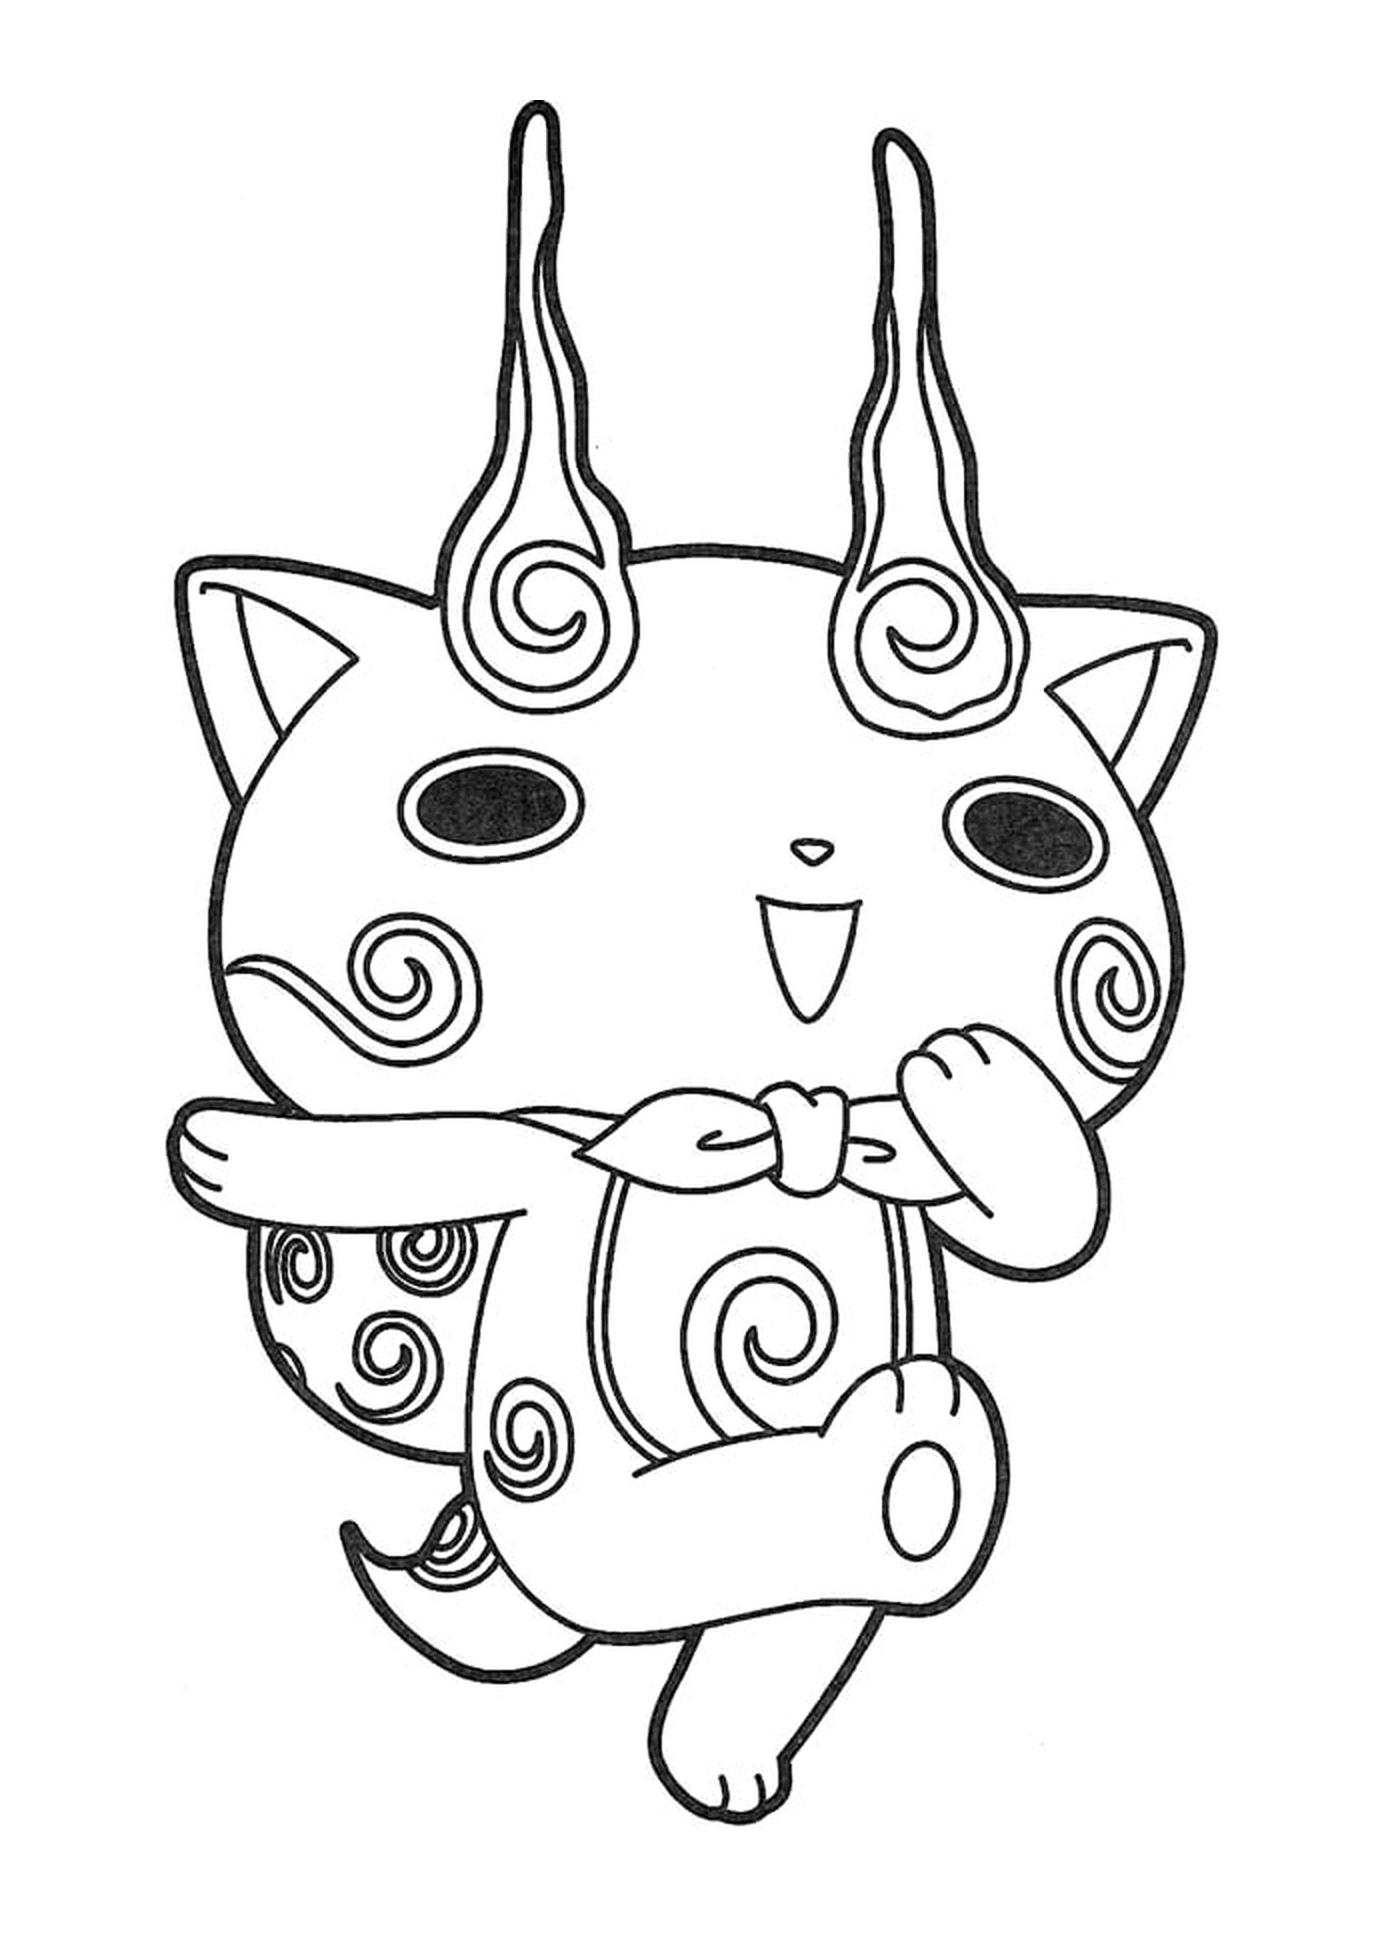  Manga niedlich Katze Zeichnung 